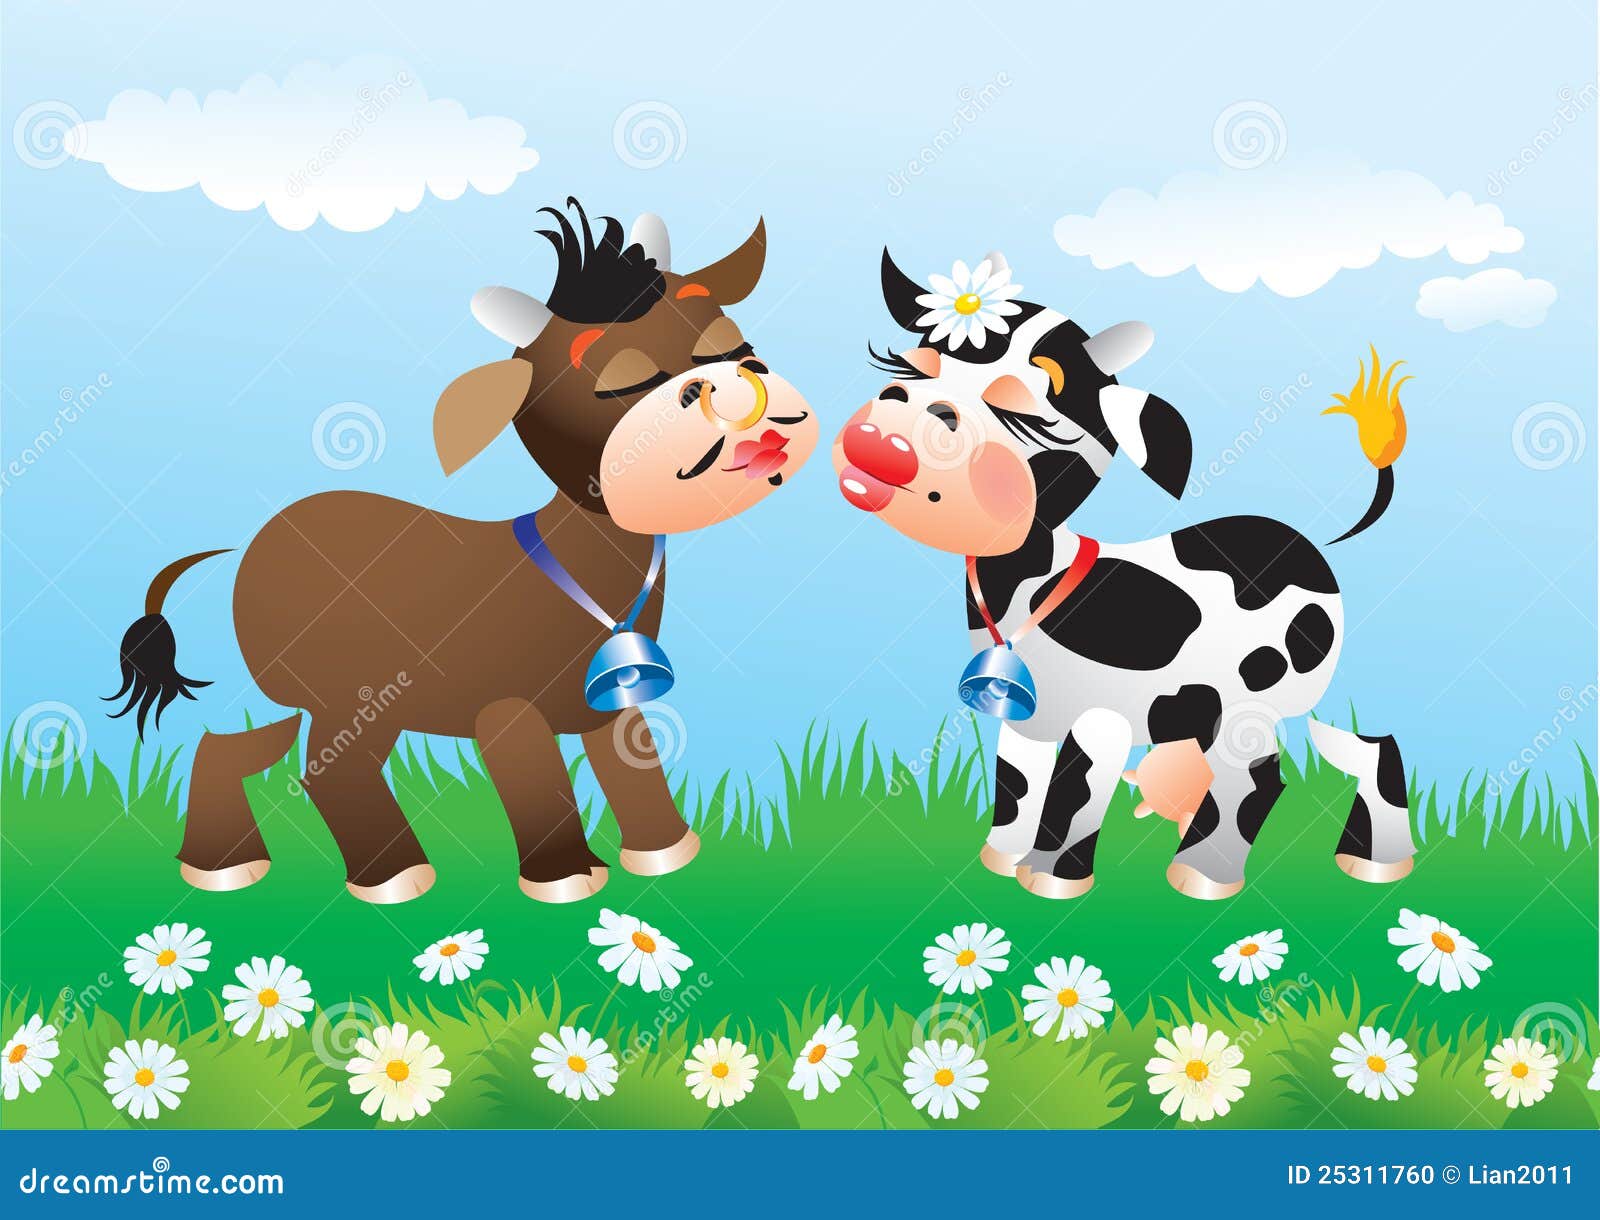 cow kisses clipart - photo #5